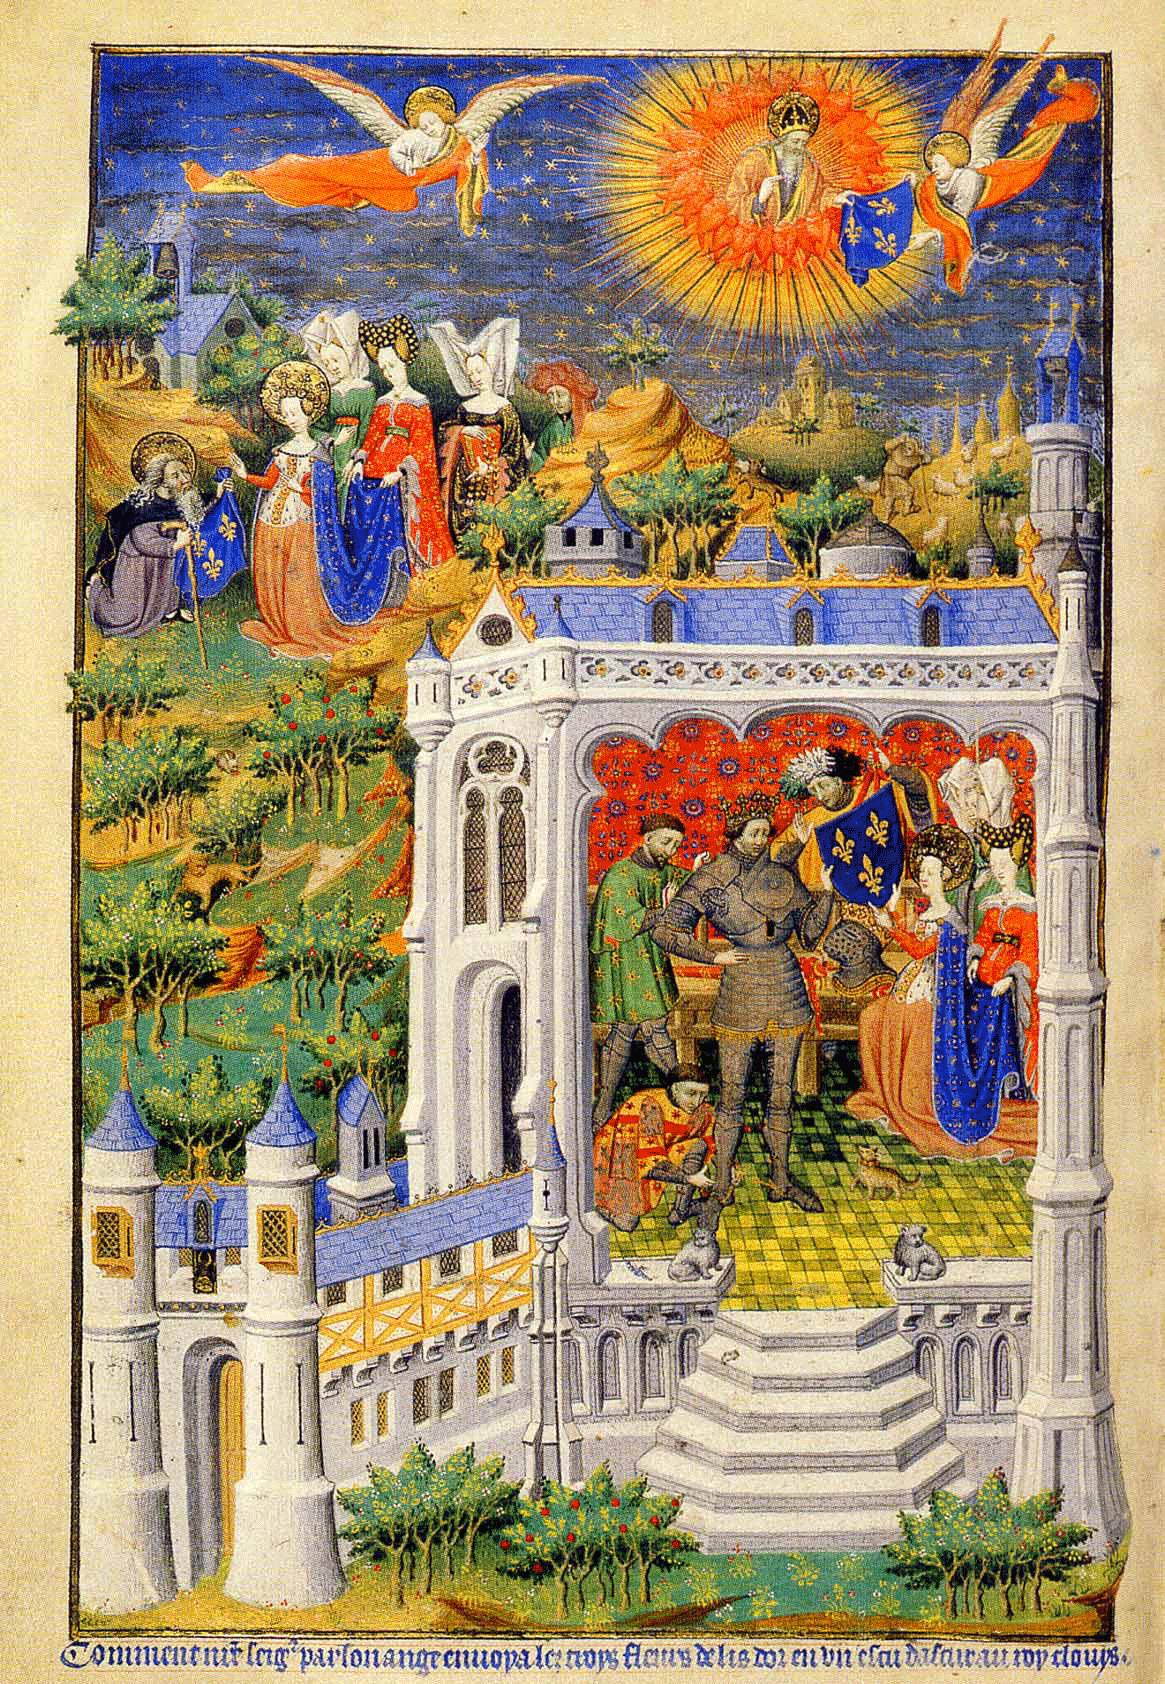 Vua Clovis nhận hoa ly. Kiệt tác Thời gian của Bedford, thế kỷ 15. (Ảnh: Tài sản công)